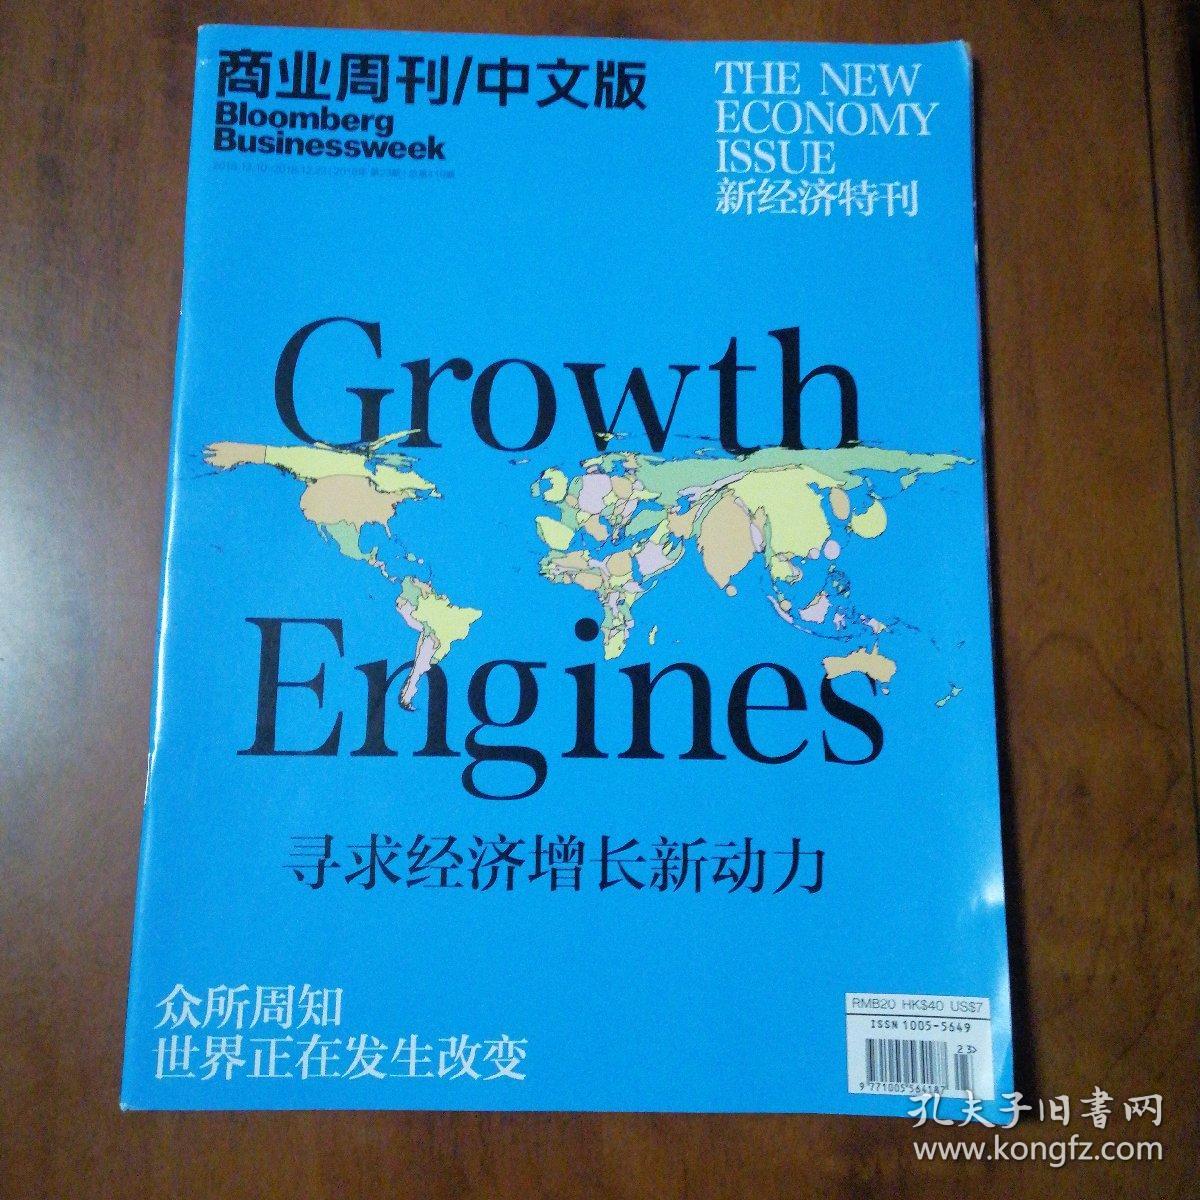 商业周刊/中文版Bloomberg Businessweek2018.23—Growth Engines寻求经济增长新动力